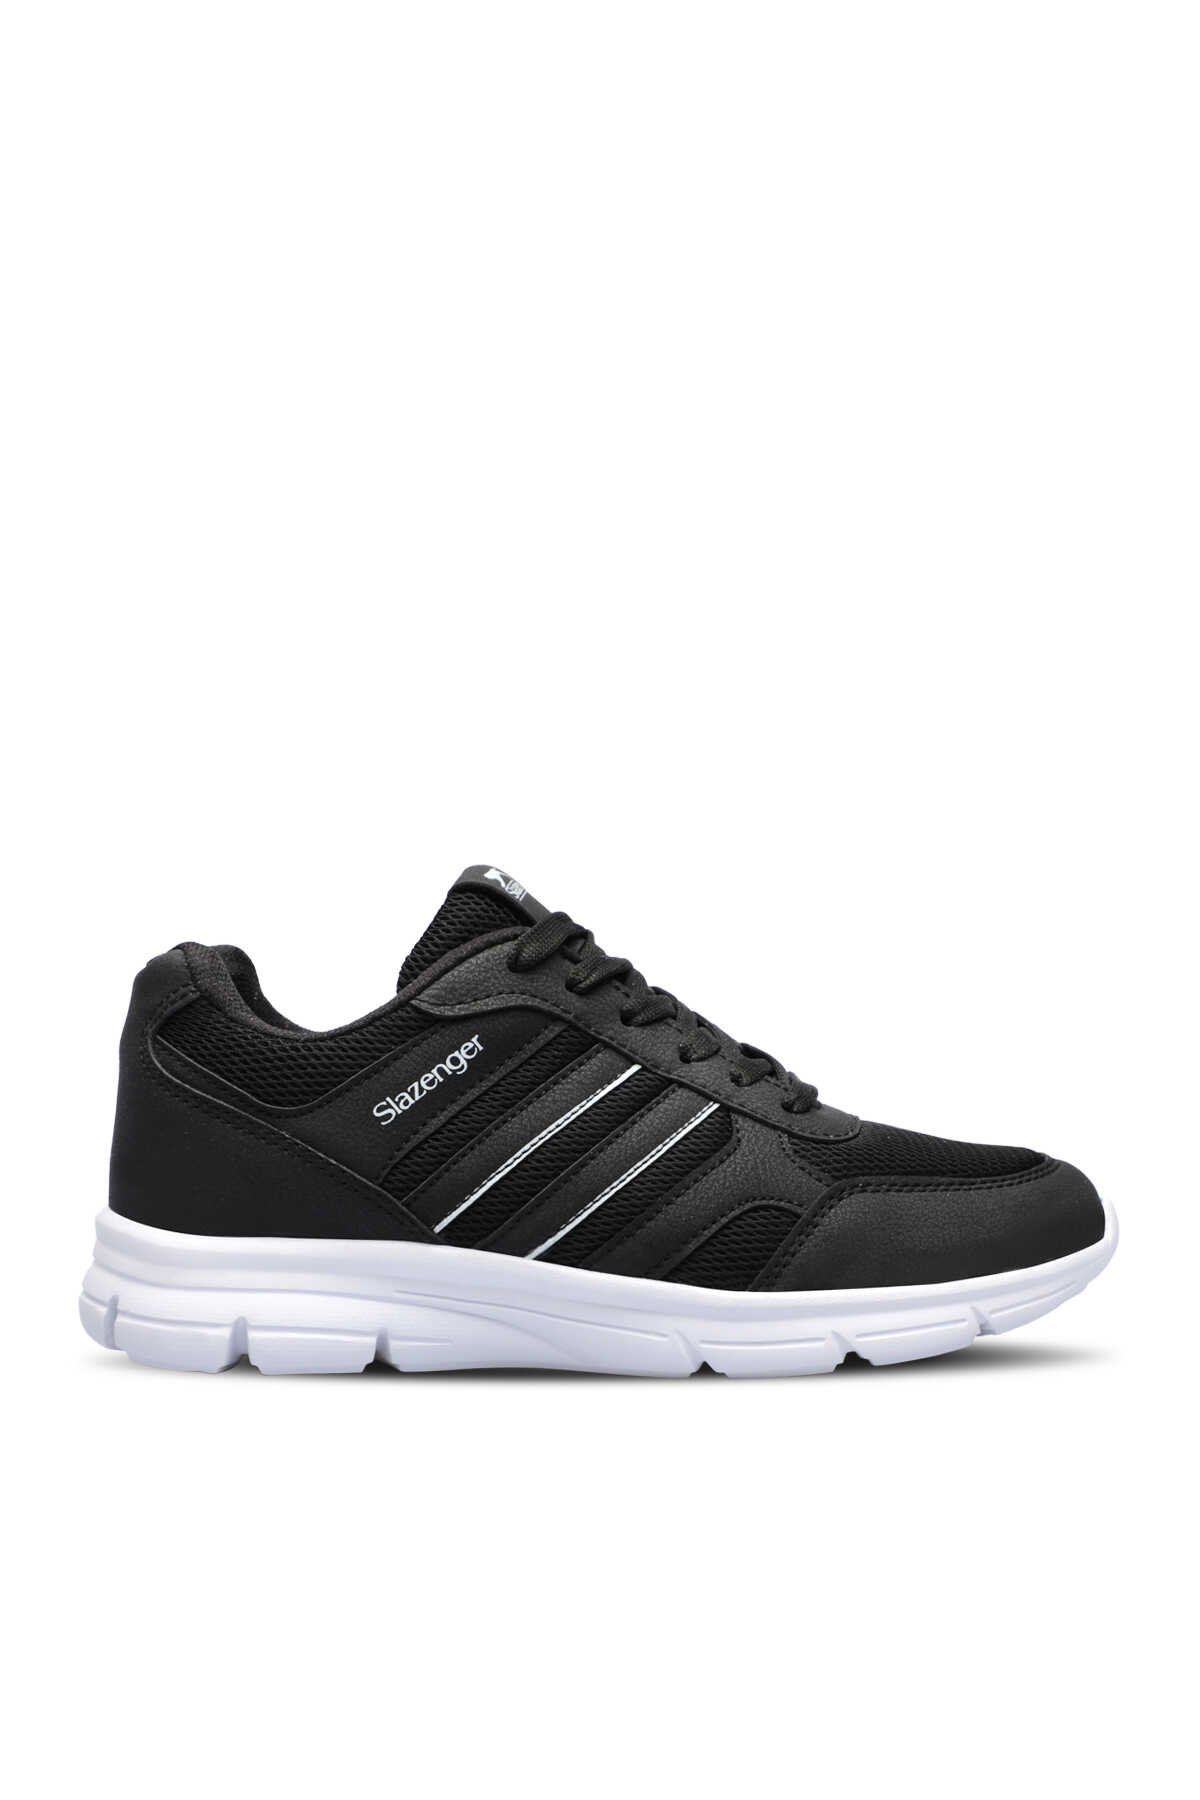 Slazenger - Slazenger EFRAT Sneaker Kadın Ayakkabı Siyah / Beyaz